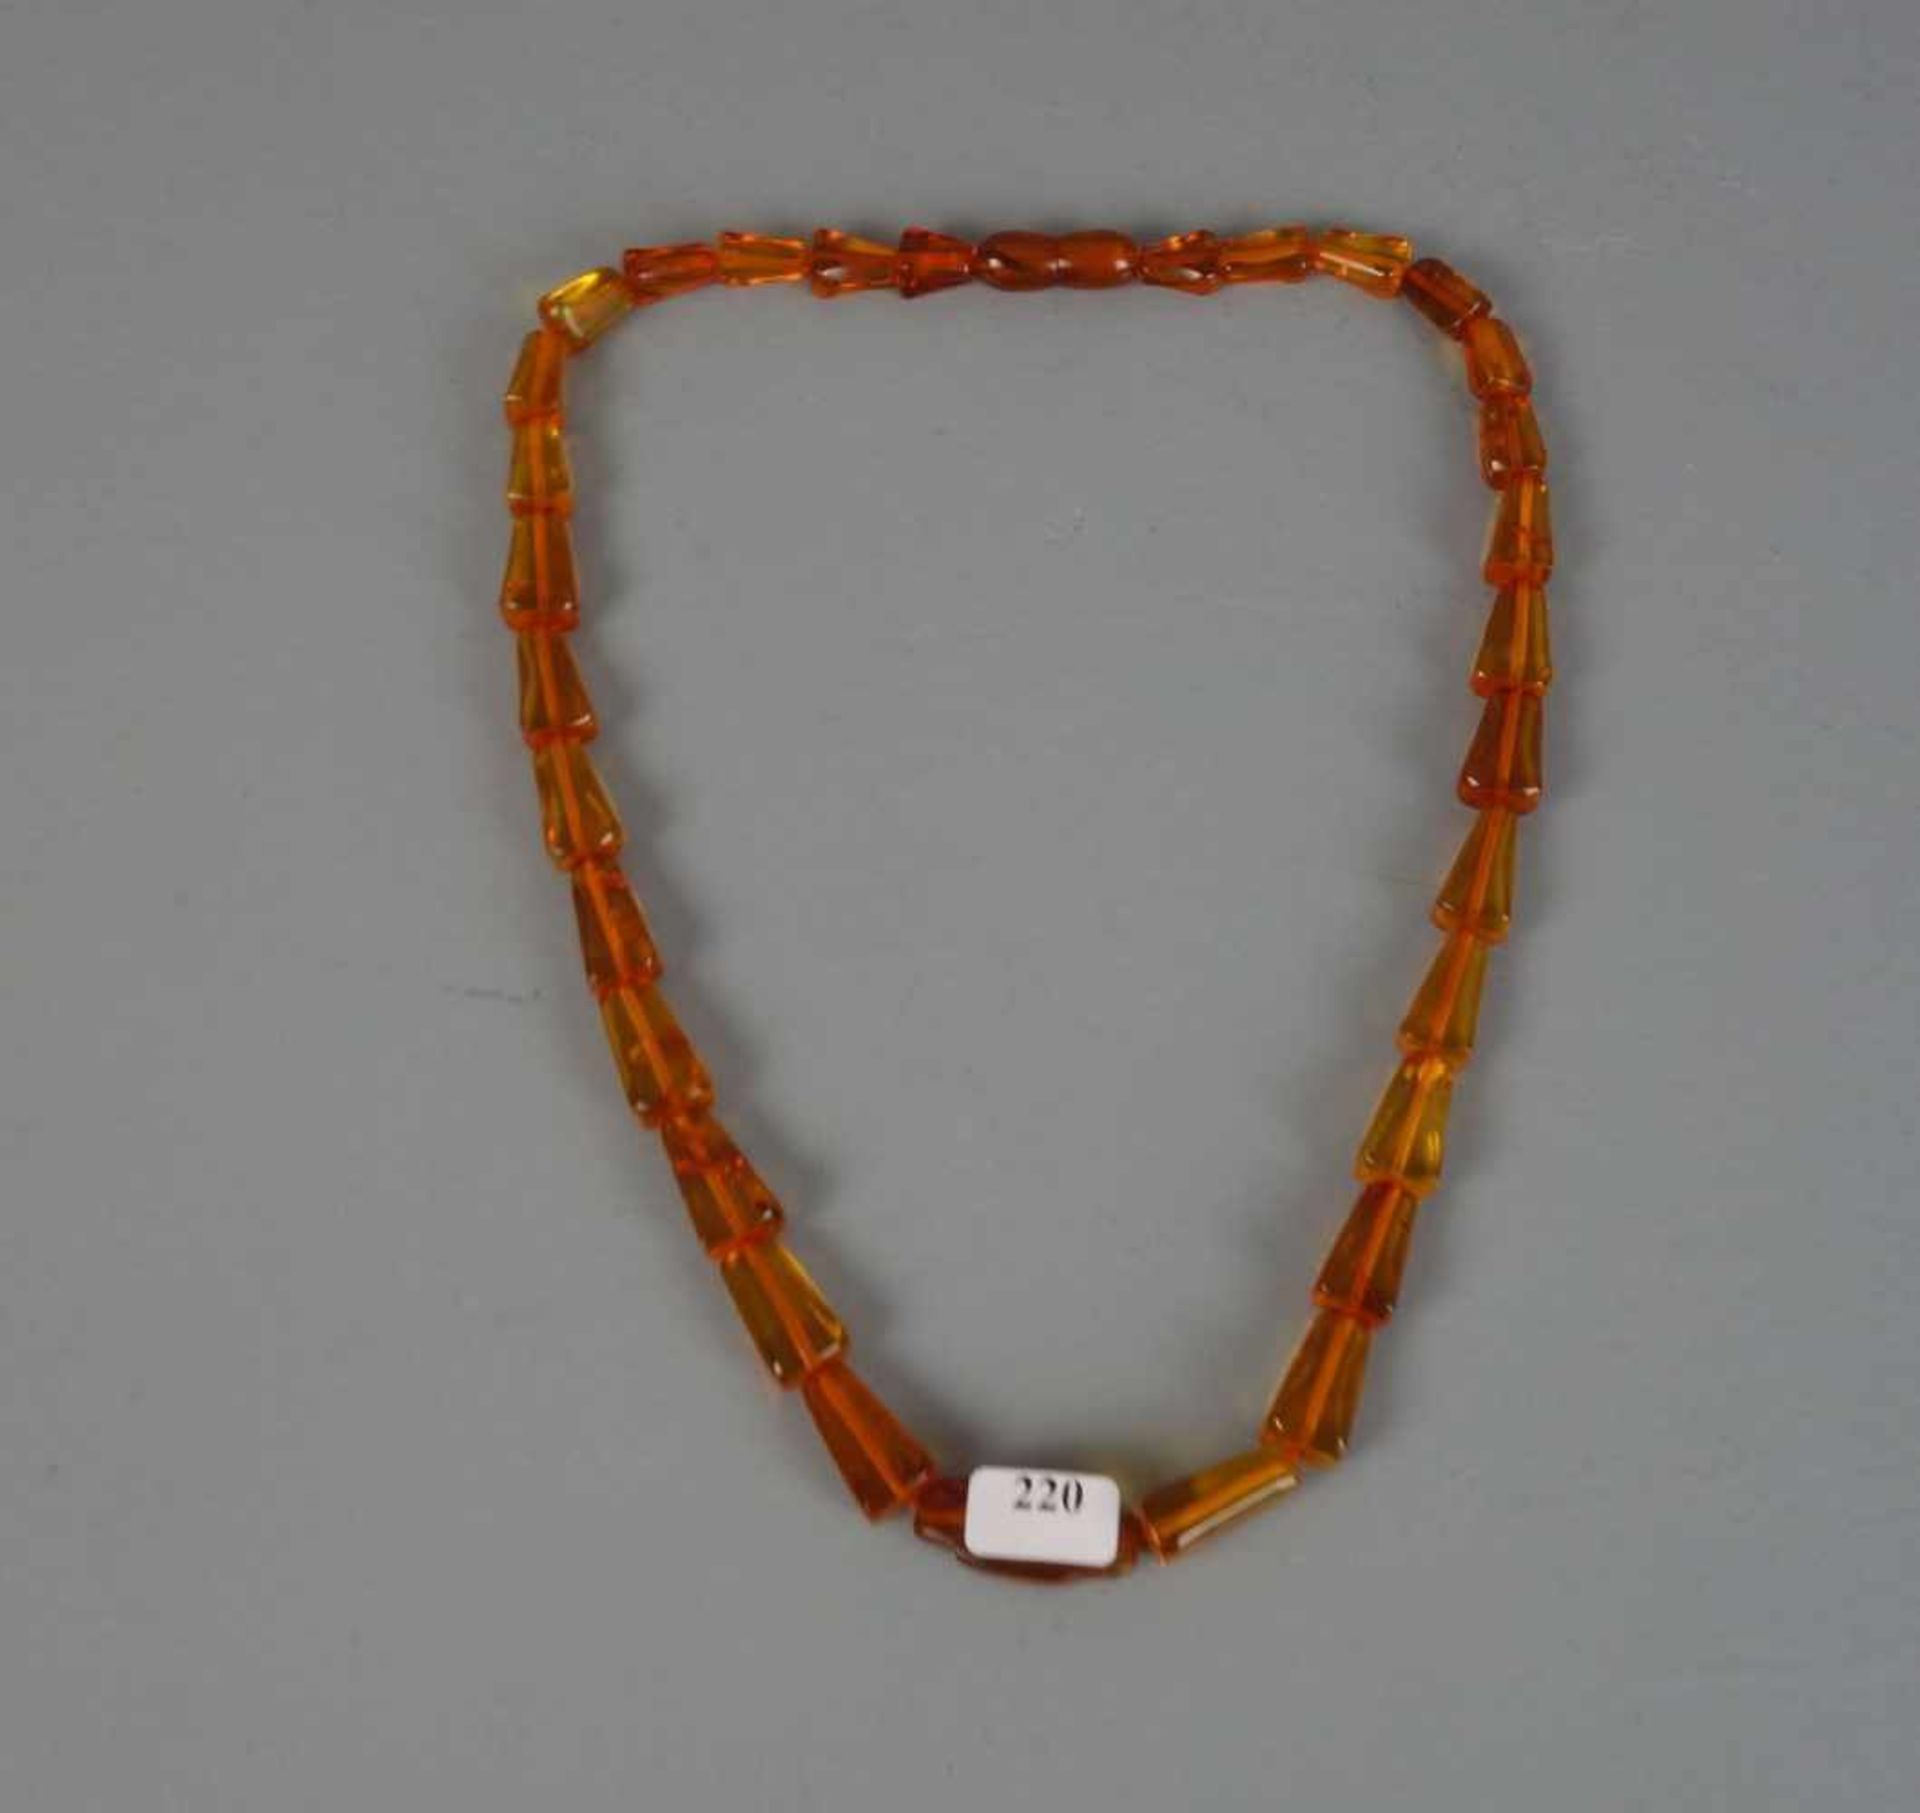 BERNSTEINKETTE / necklace, 1930er Jahre. Klargelbe, gekantete Bernsteinelemente in Größen zwischen 1